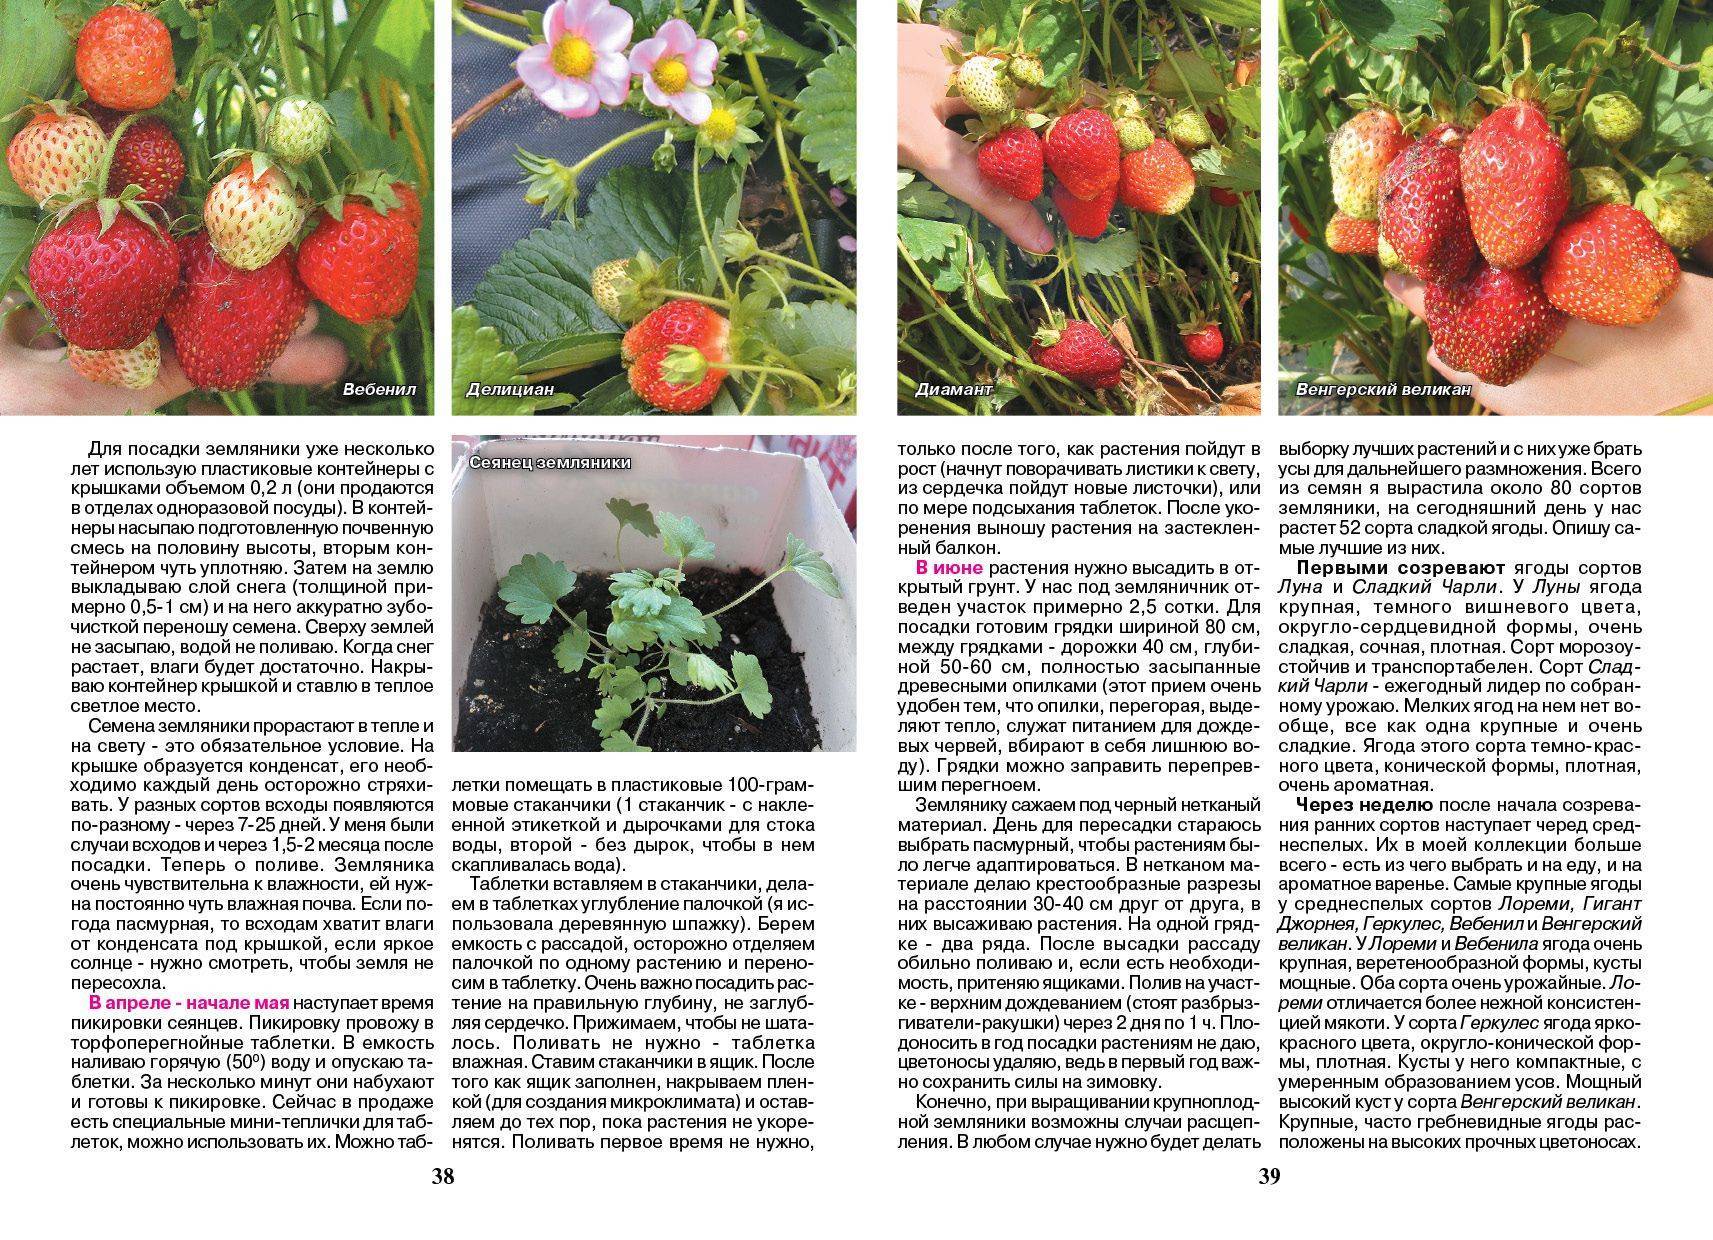 Клубника зефир: описание и характеристики сорта садовой земляники, правила выращивания виктории и фото